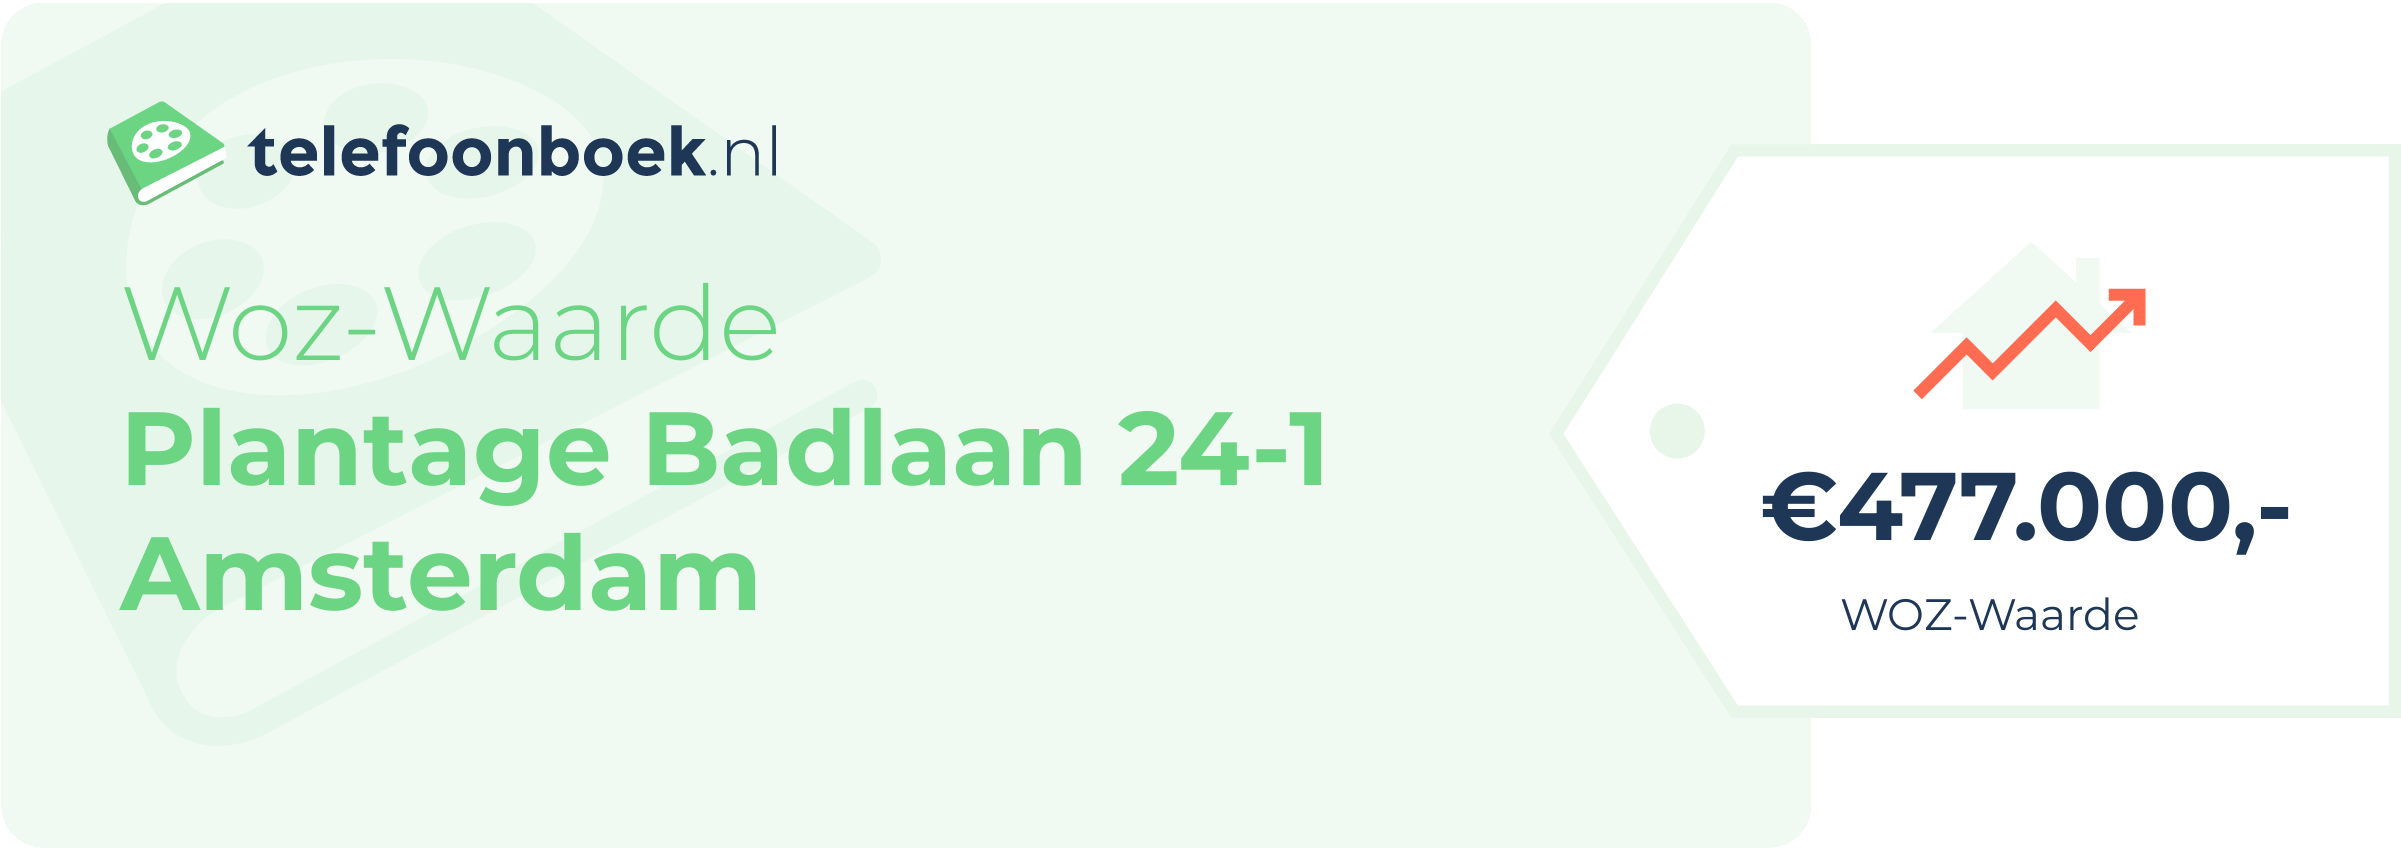 WOZ-waarde Plantage Badlaan 24-1 Amsterdam